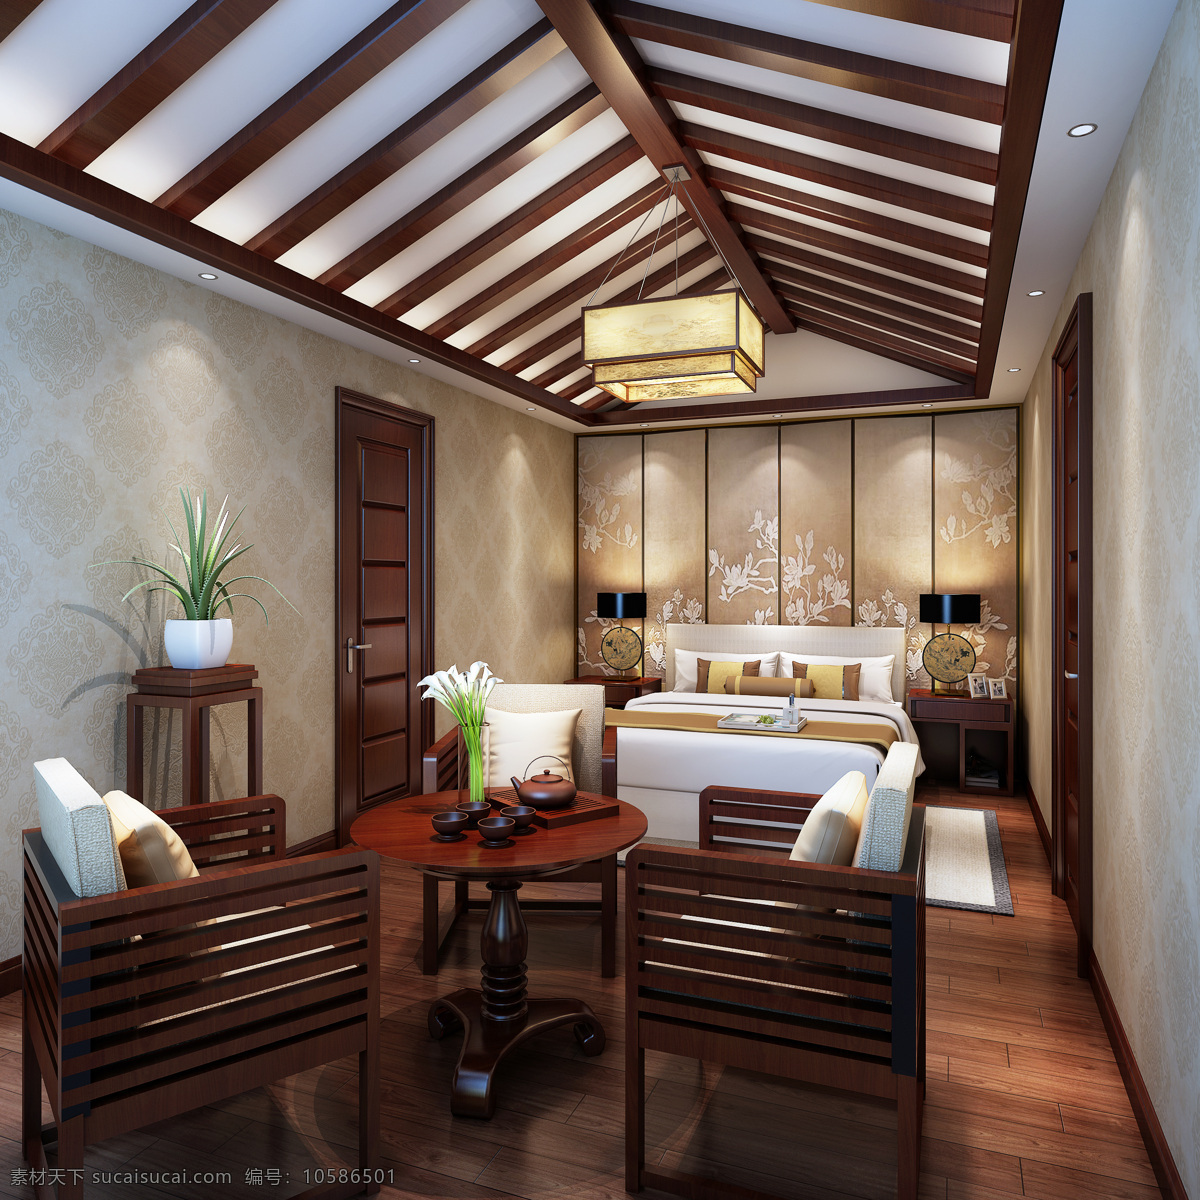 中式 清亮 古雅 卧室 室内 木制 茶几 室内装修 图 客厅装修 木制地板 木制家具 白色抱枕